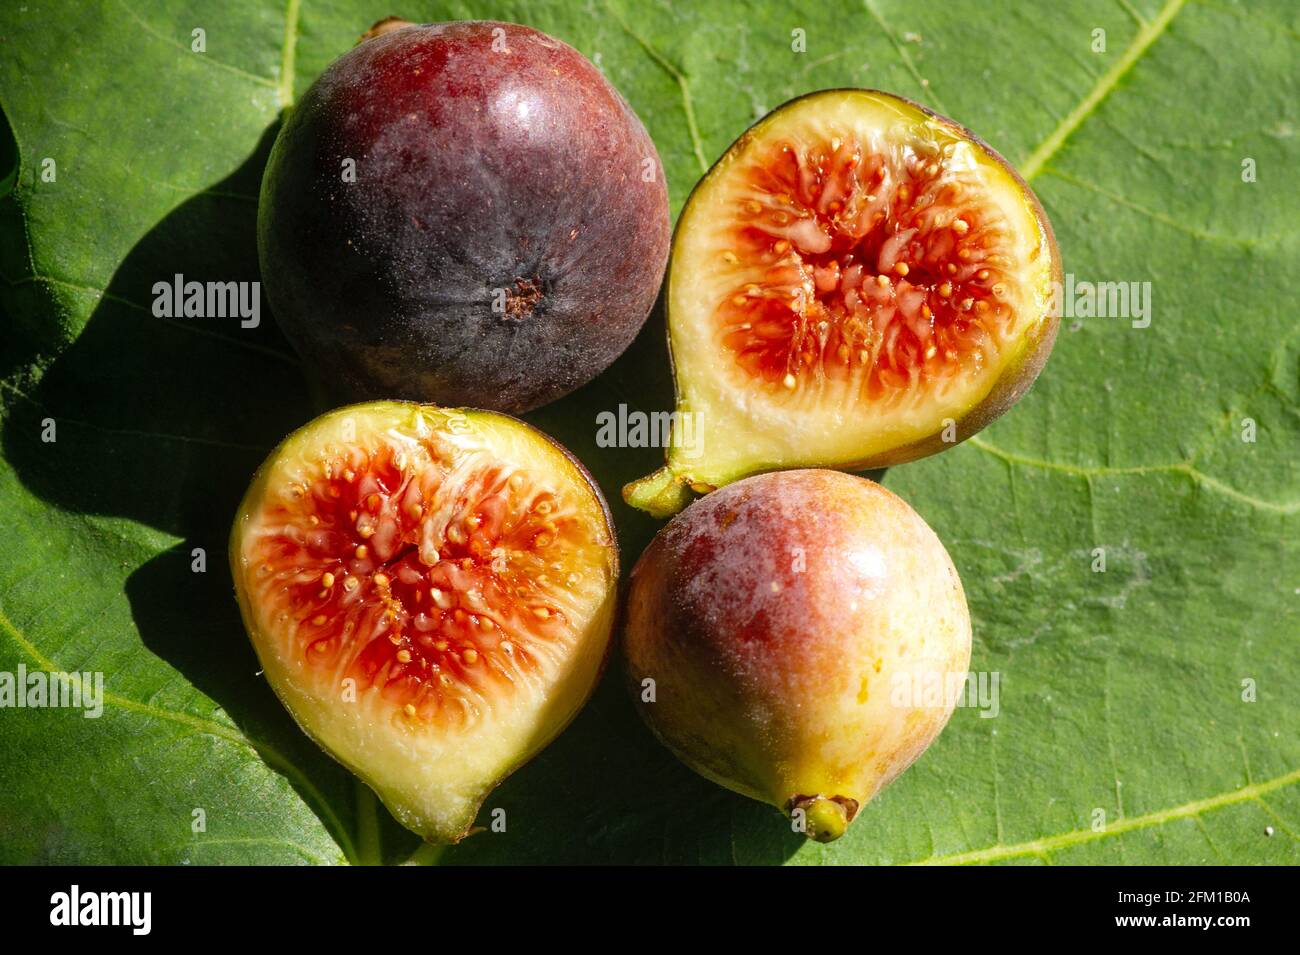 Nahaufnahme von frischen reifen Zinn-Früchten, Feigen-Früchten, in flachem Fokus. Der wissenschaftliche Name dieser Früchte ist Ficus carica, eine Art blühender Pflanze in t Stockfoto